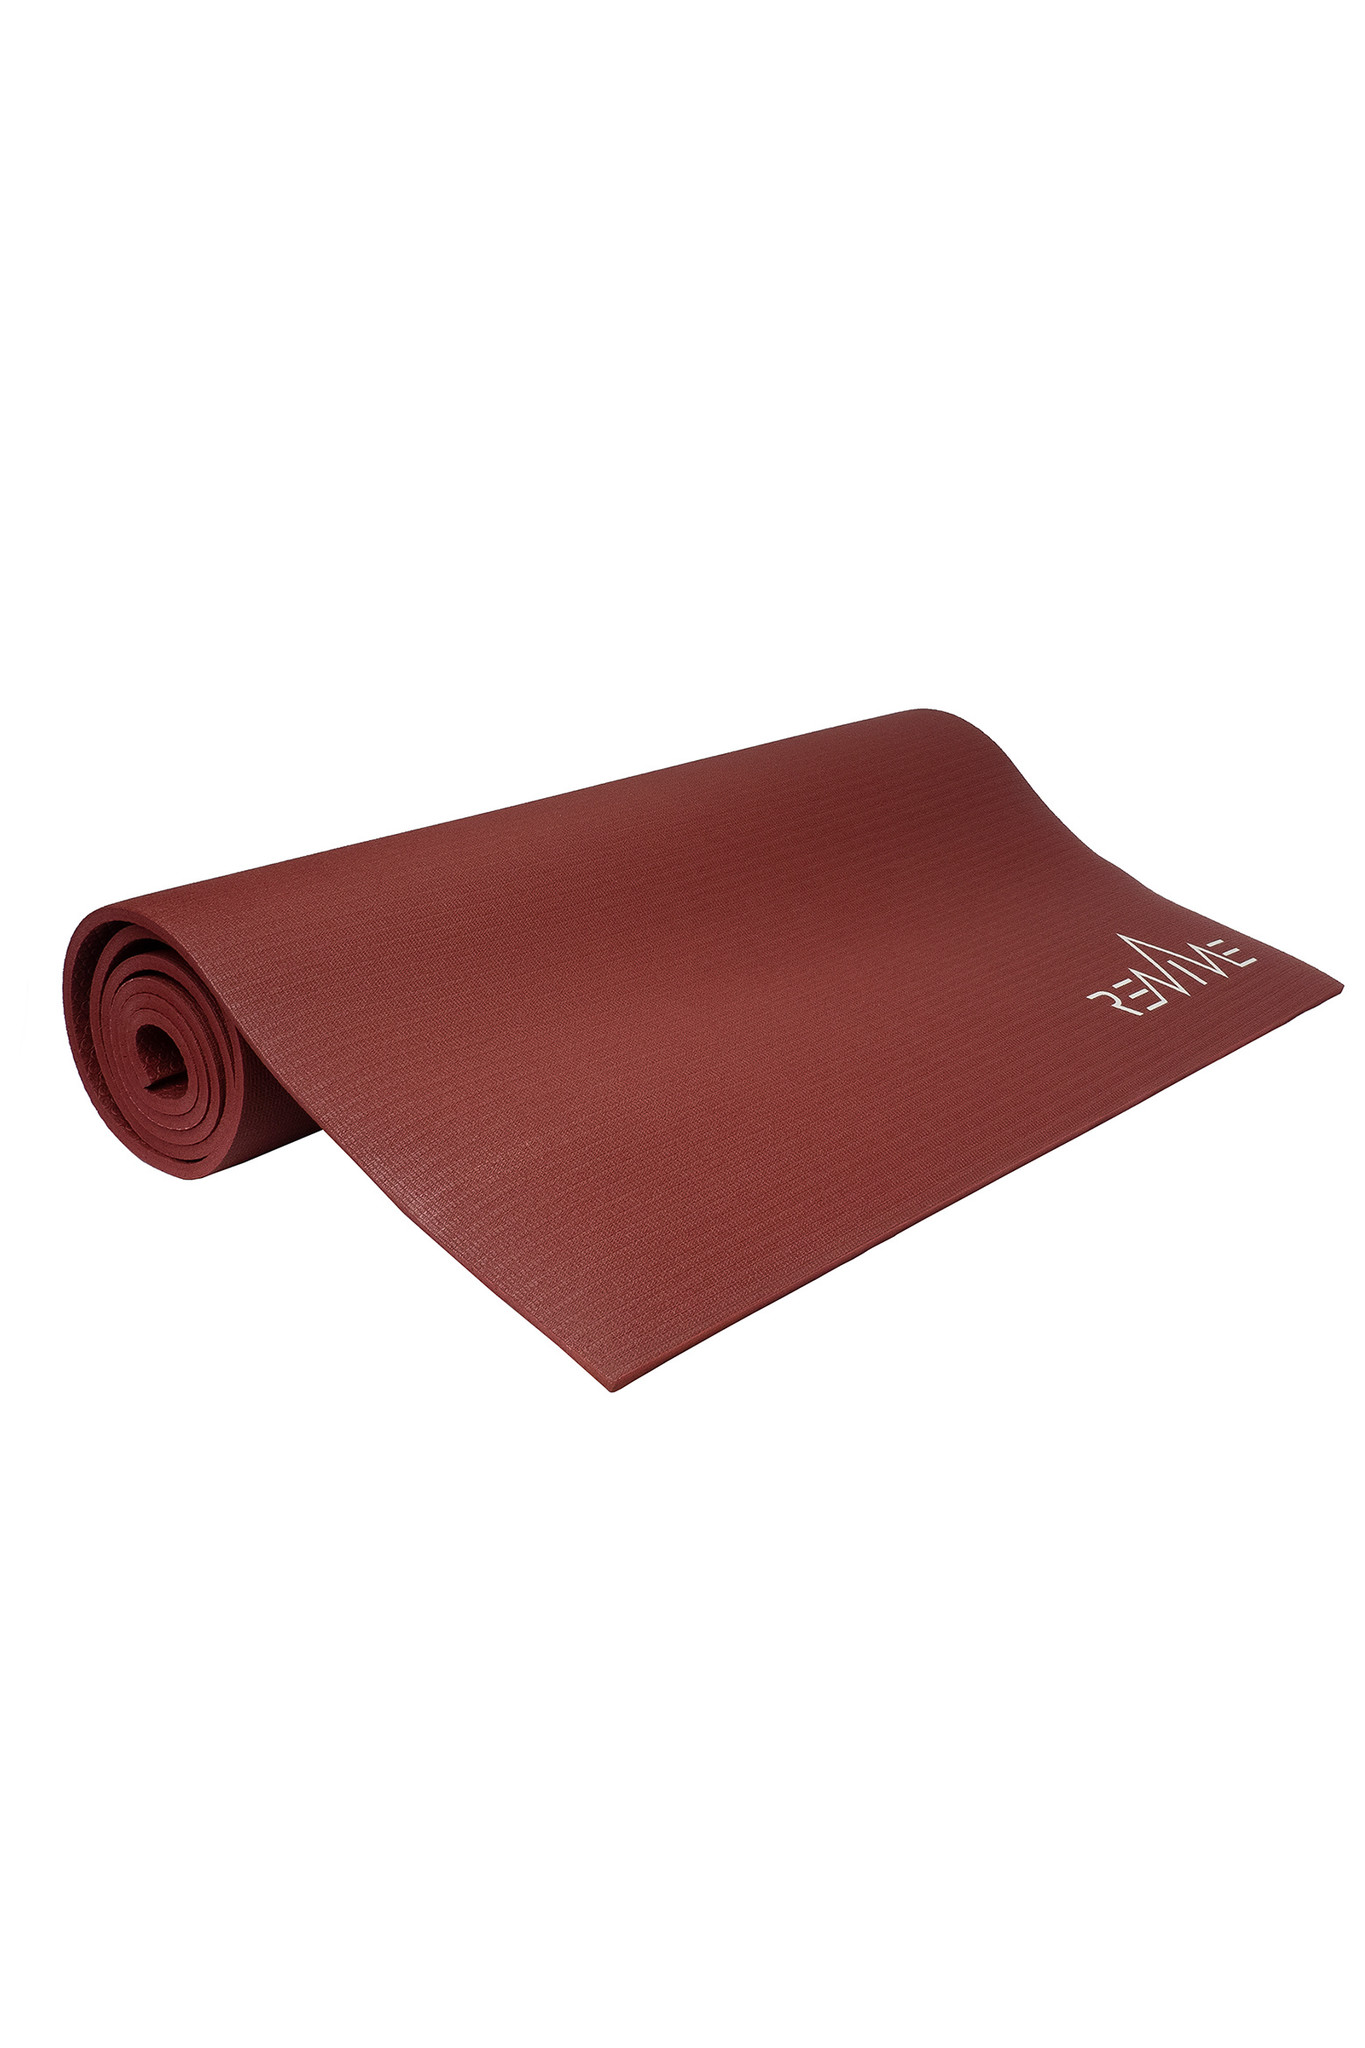 Yoga Mat Element Grow XL 200cm 4mm Natural Rubber, 40% OFF